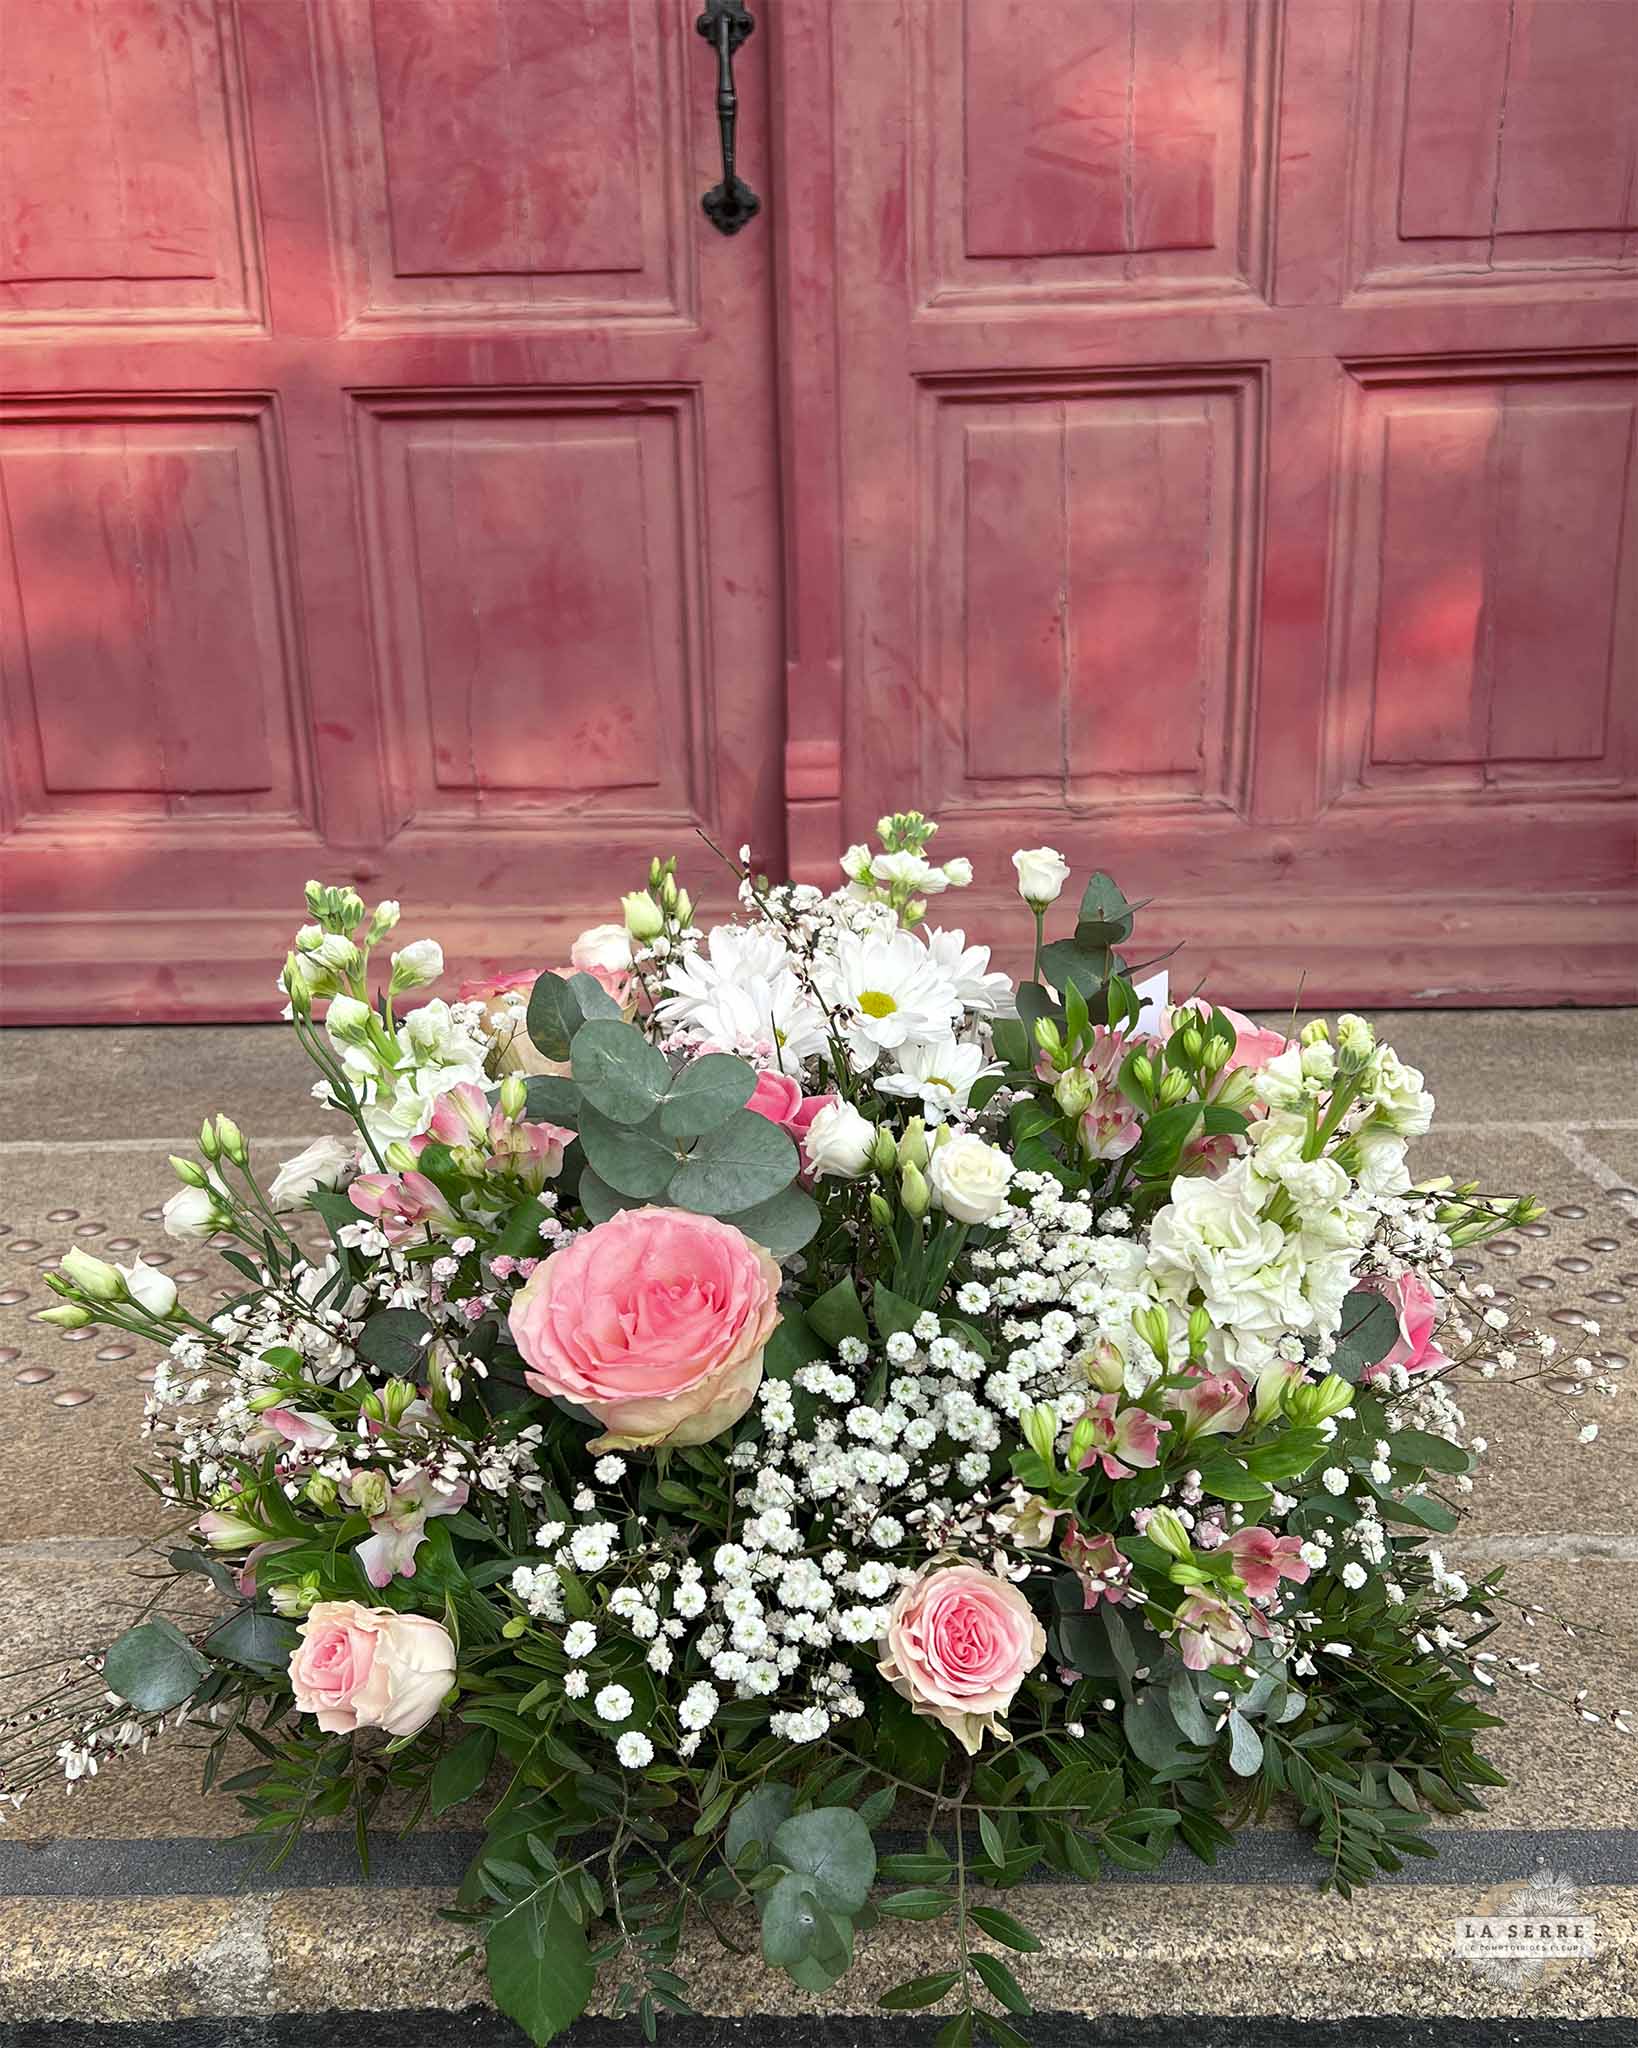 Coussin de fleurs pour un dernier hommage. Livraison rapide à Nantes et sa périphérie. LA SERRE fleuriste Nantes